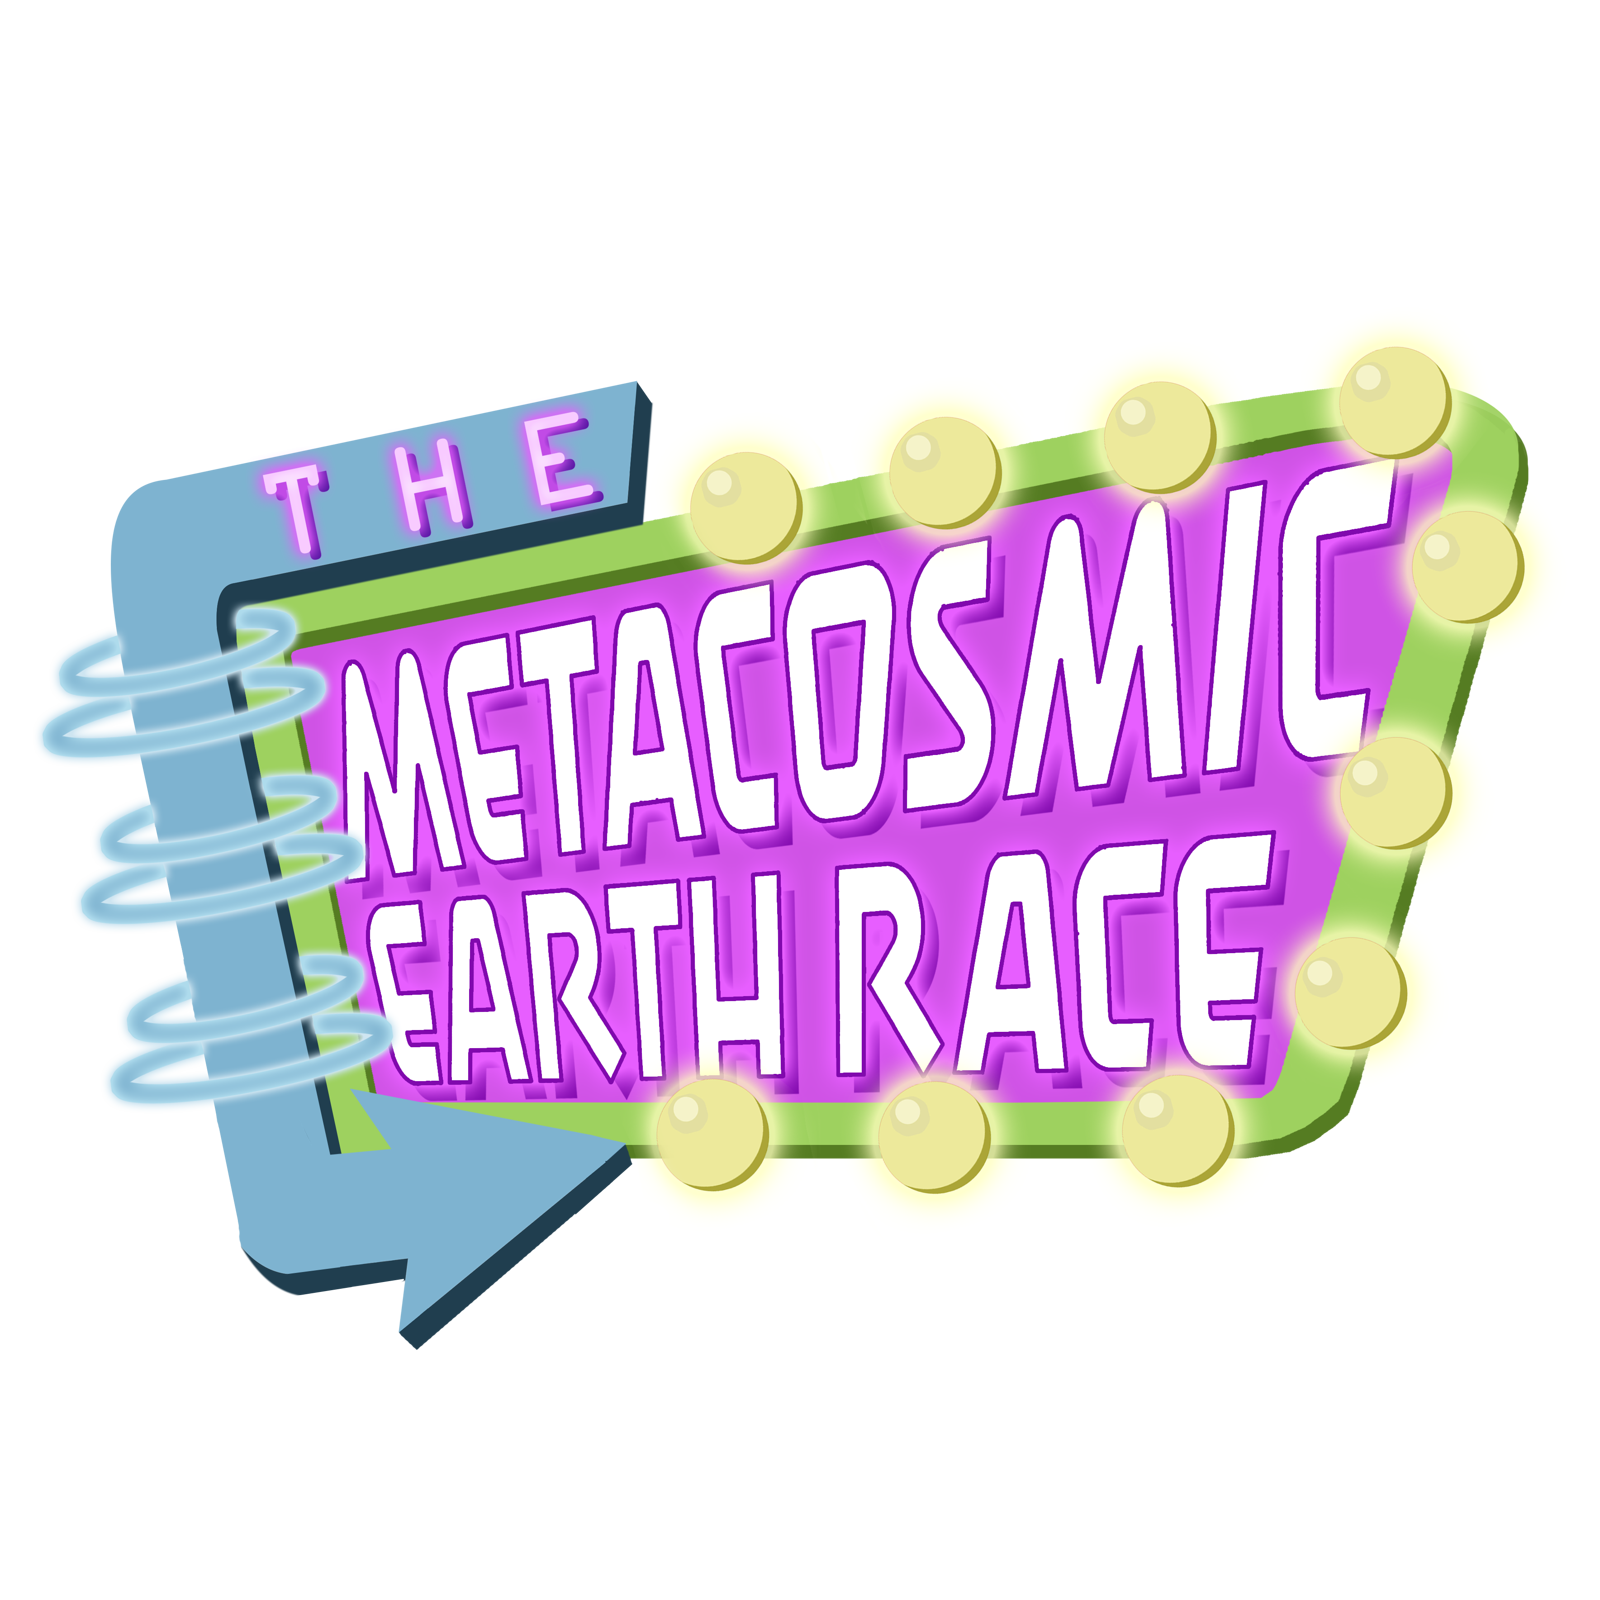 The Metacosmic Earth Race.